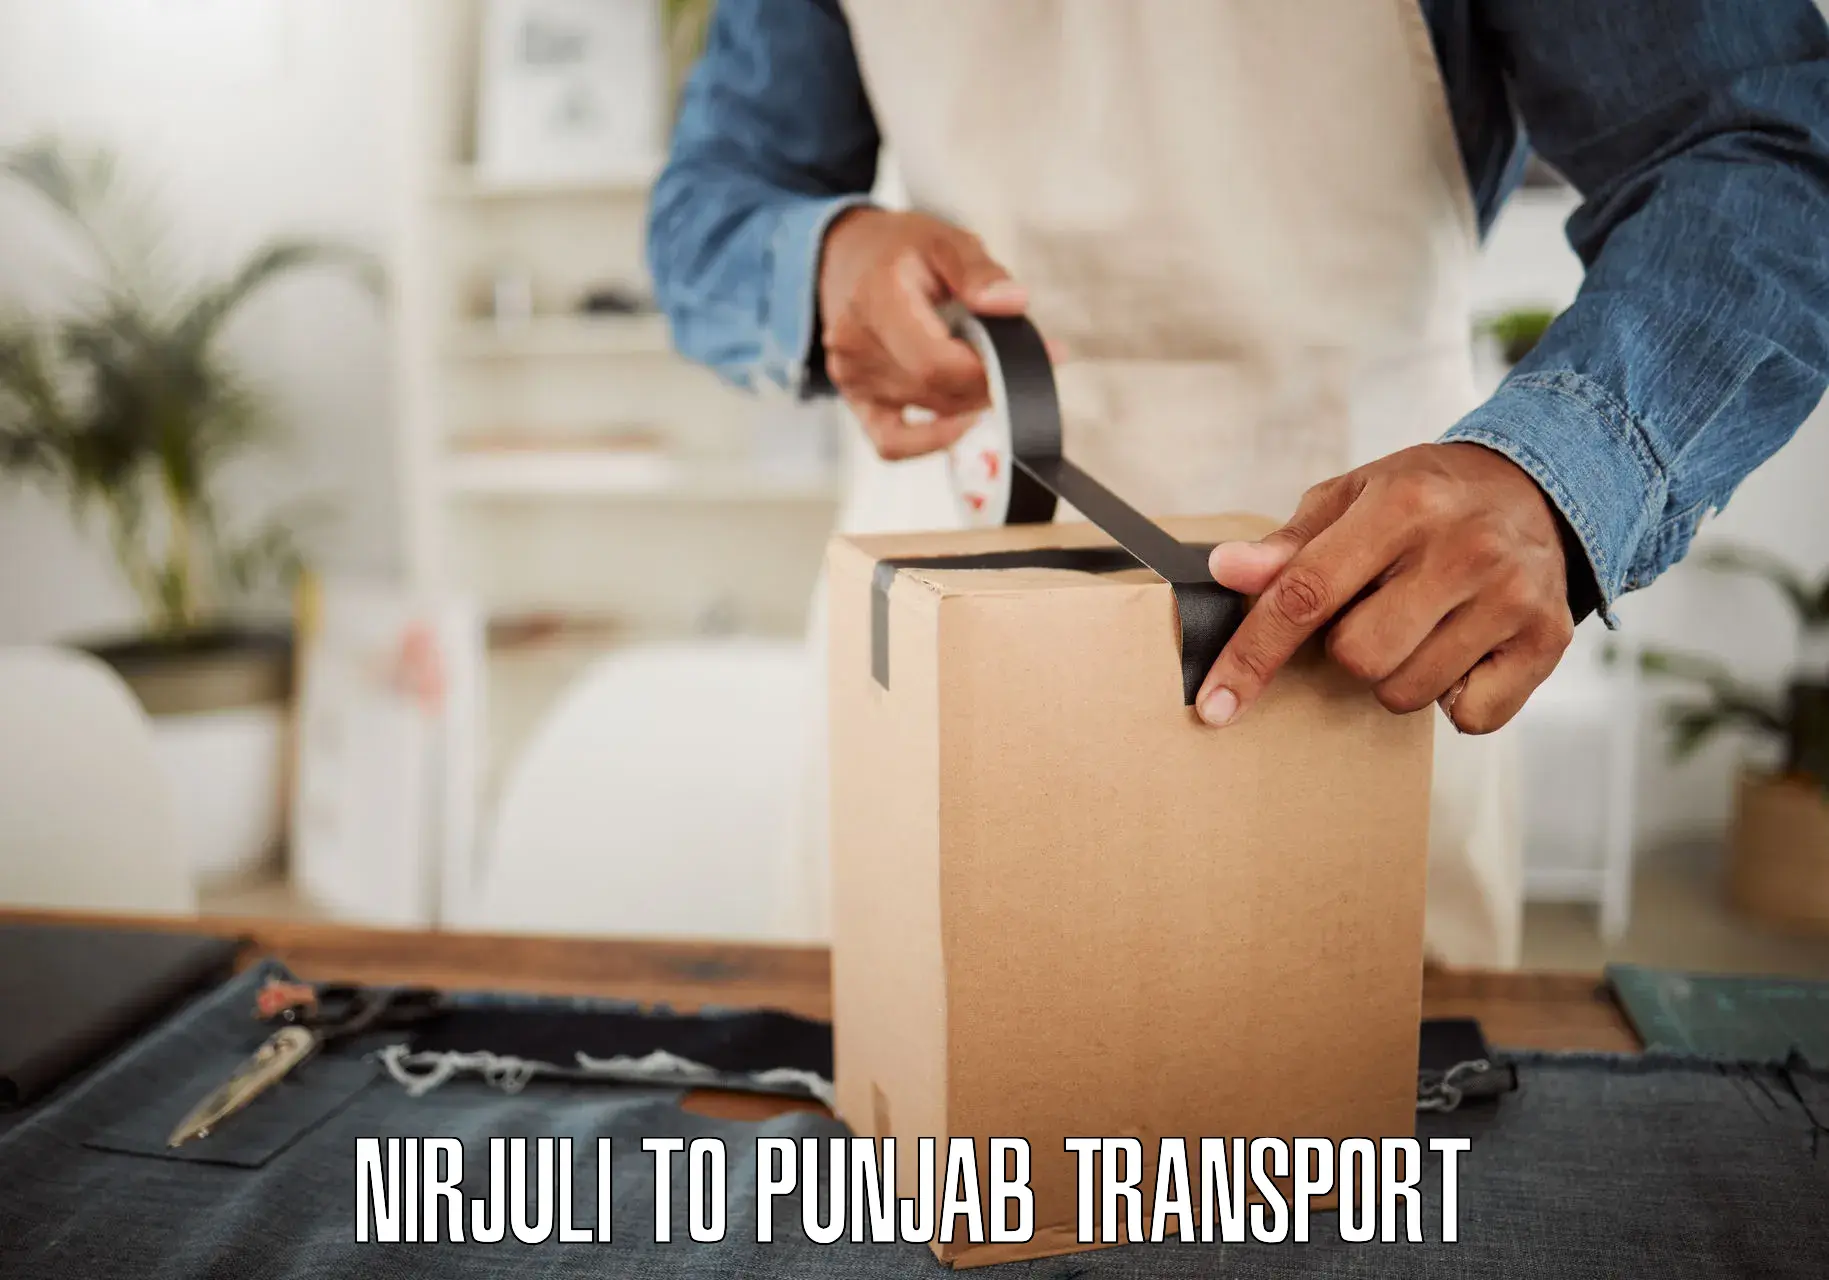 Parcel transport services Nirjuli to Mohali